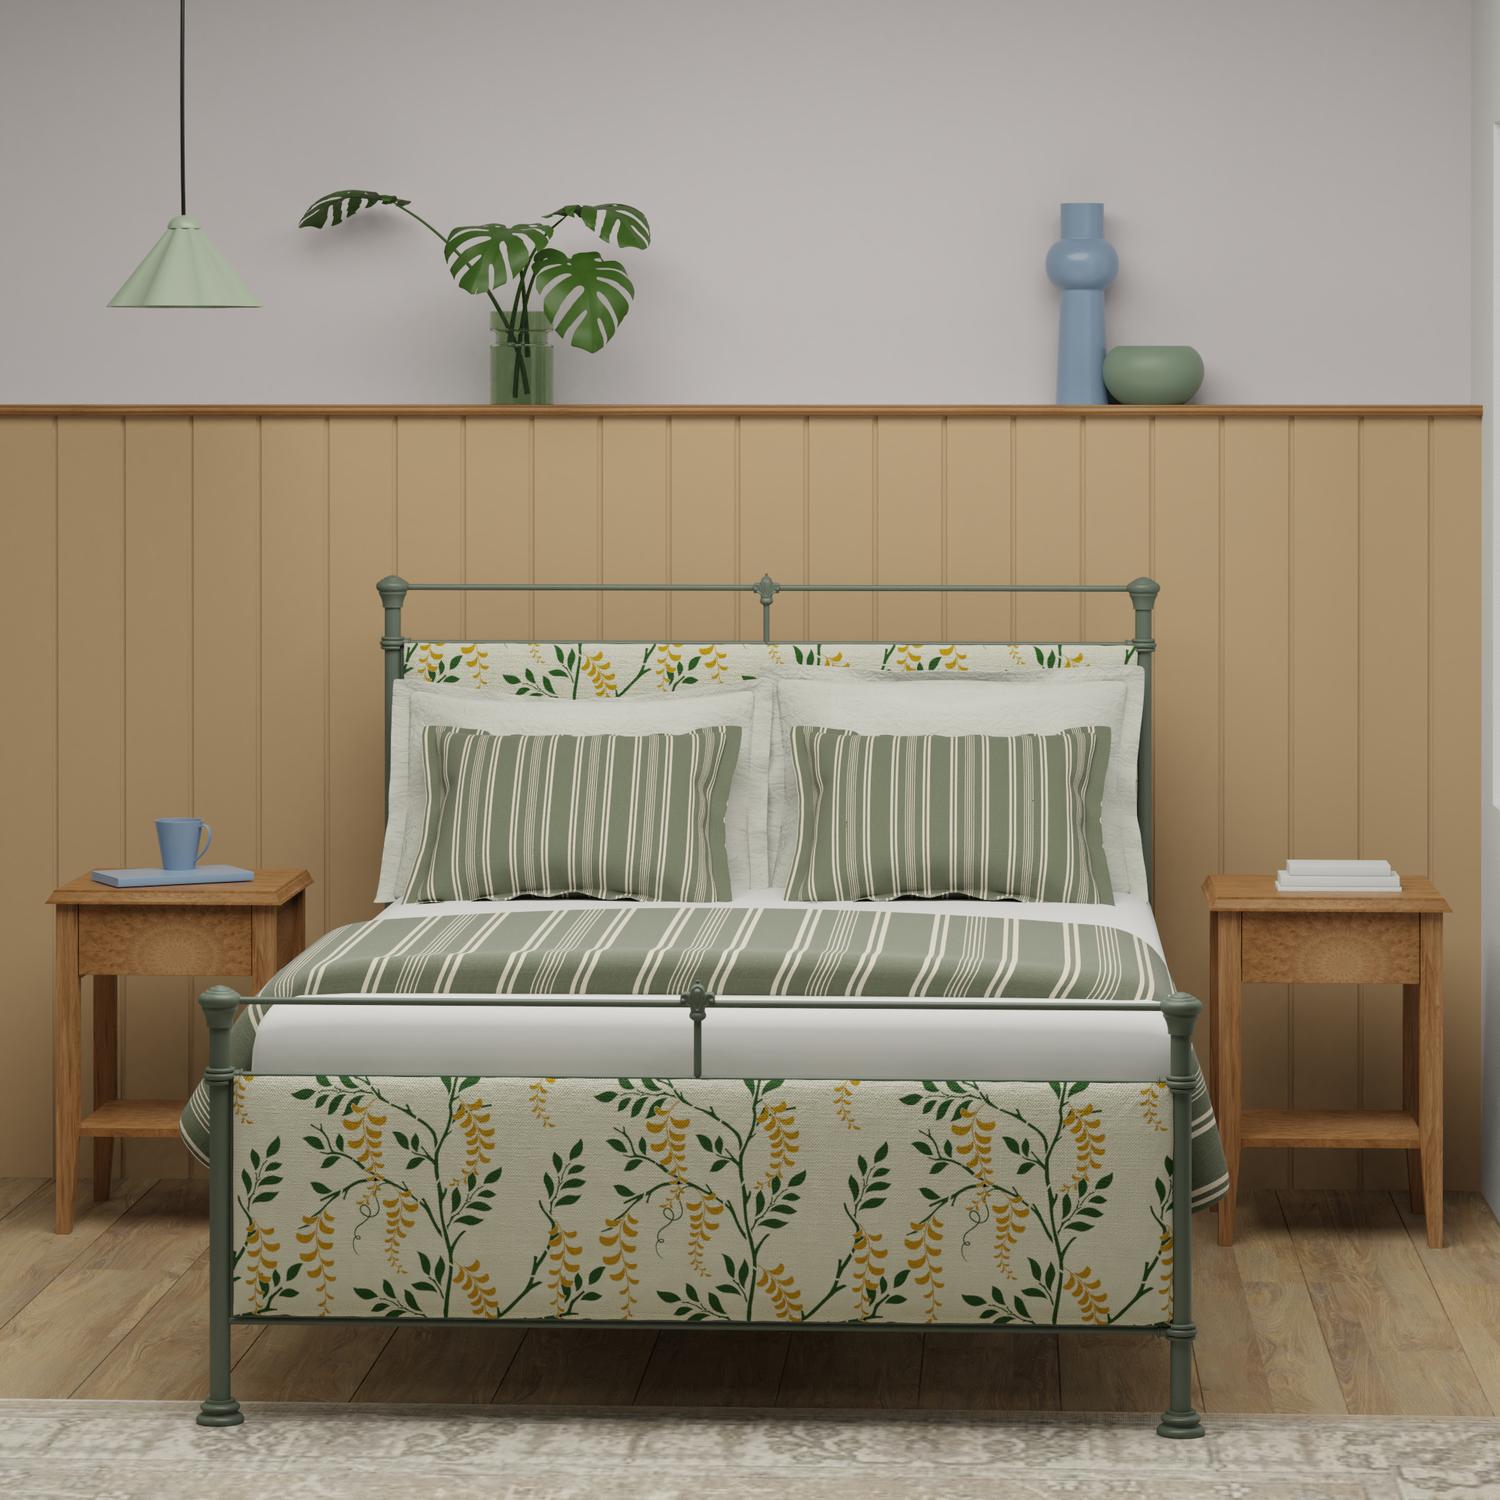 Nancy iron bed - Image mustard bedroom